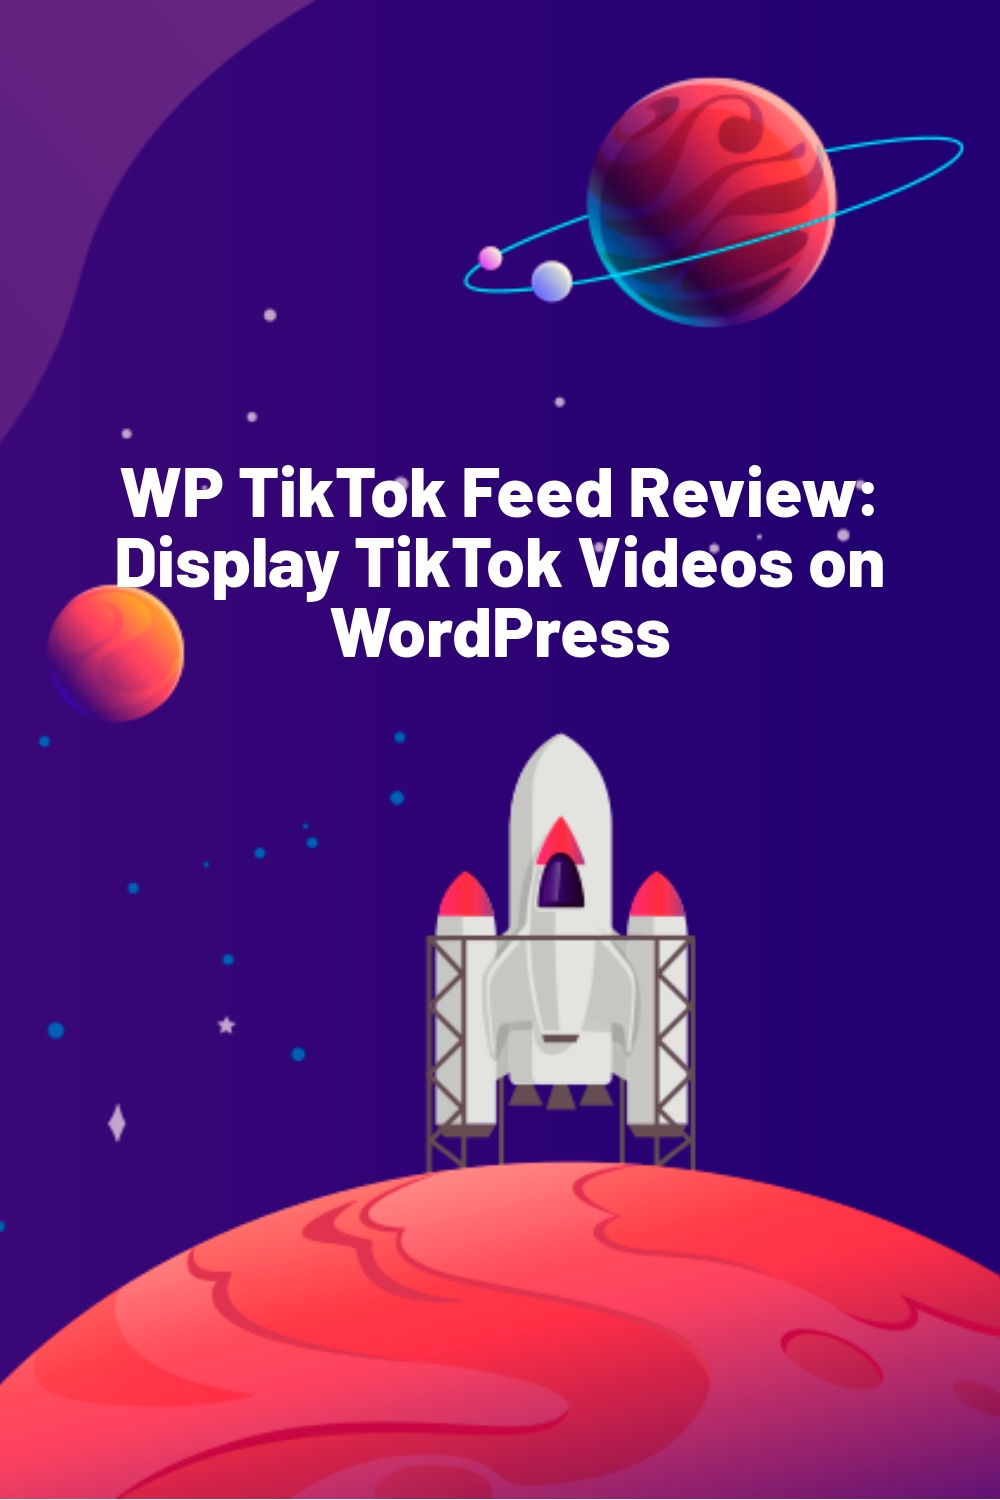 WP TikTok Feed Review: Display TikTok Videos on WordPress